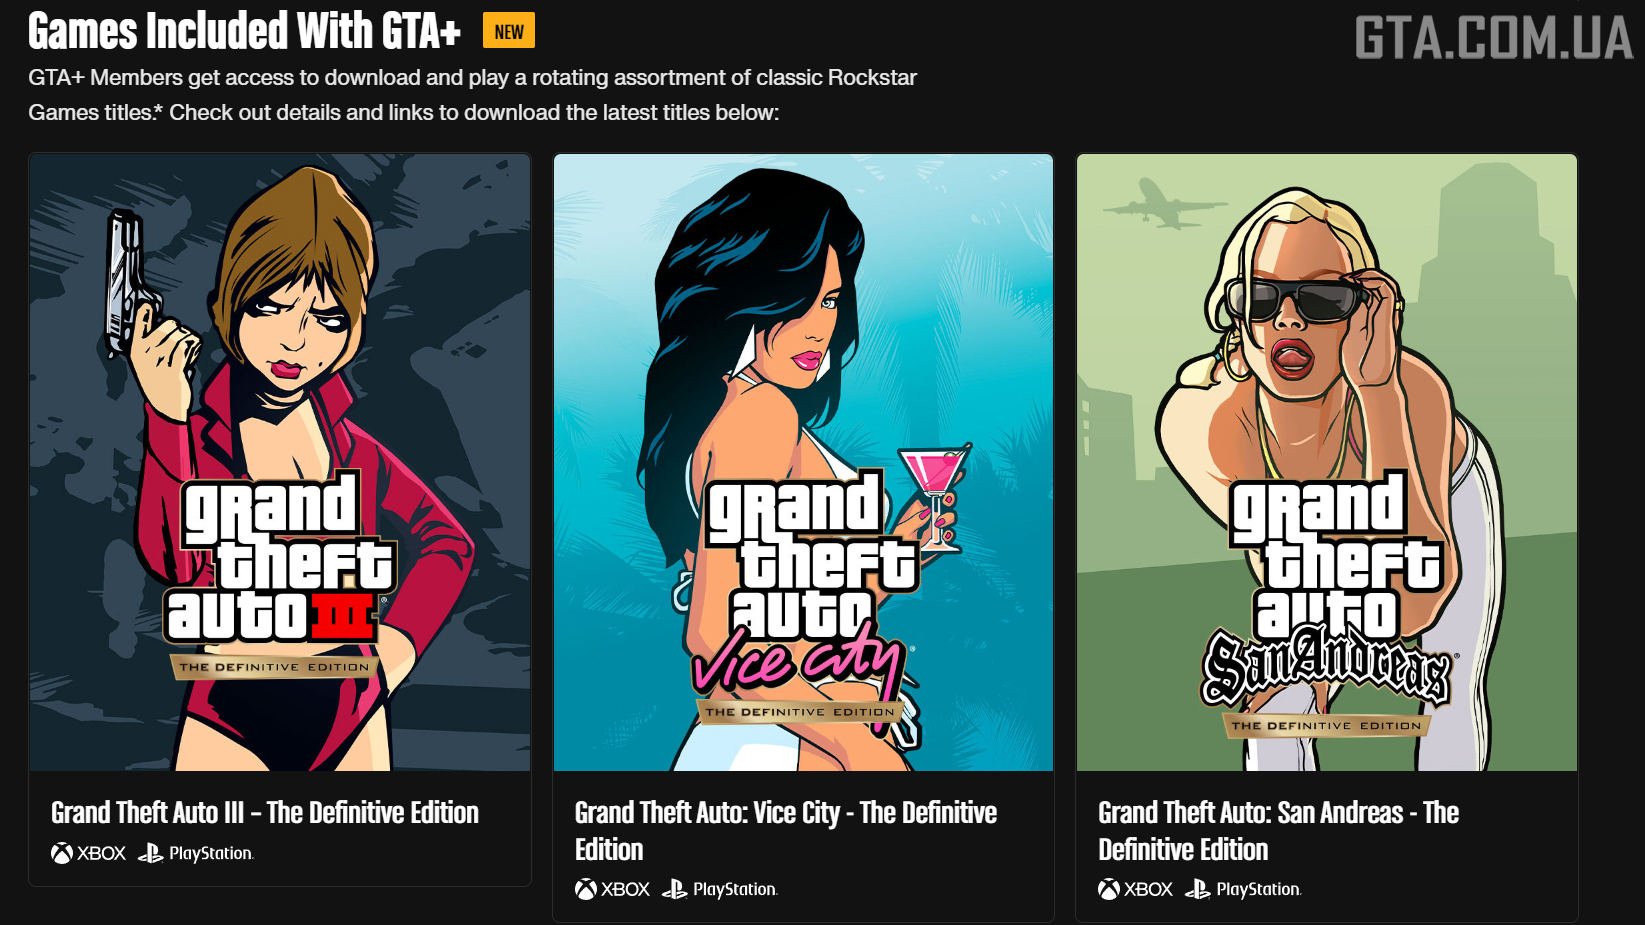 Новый раздел на странице GTA+, посвящённый доступным по подписке играм.